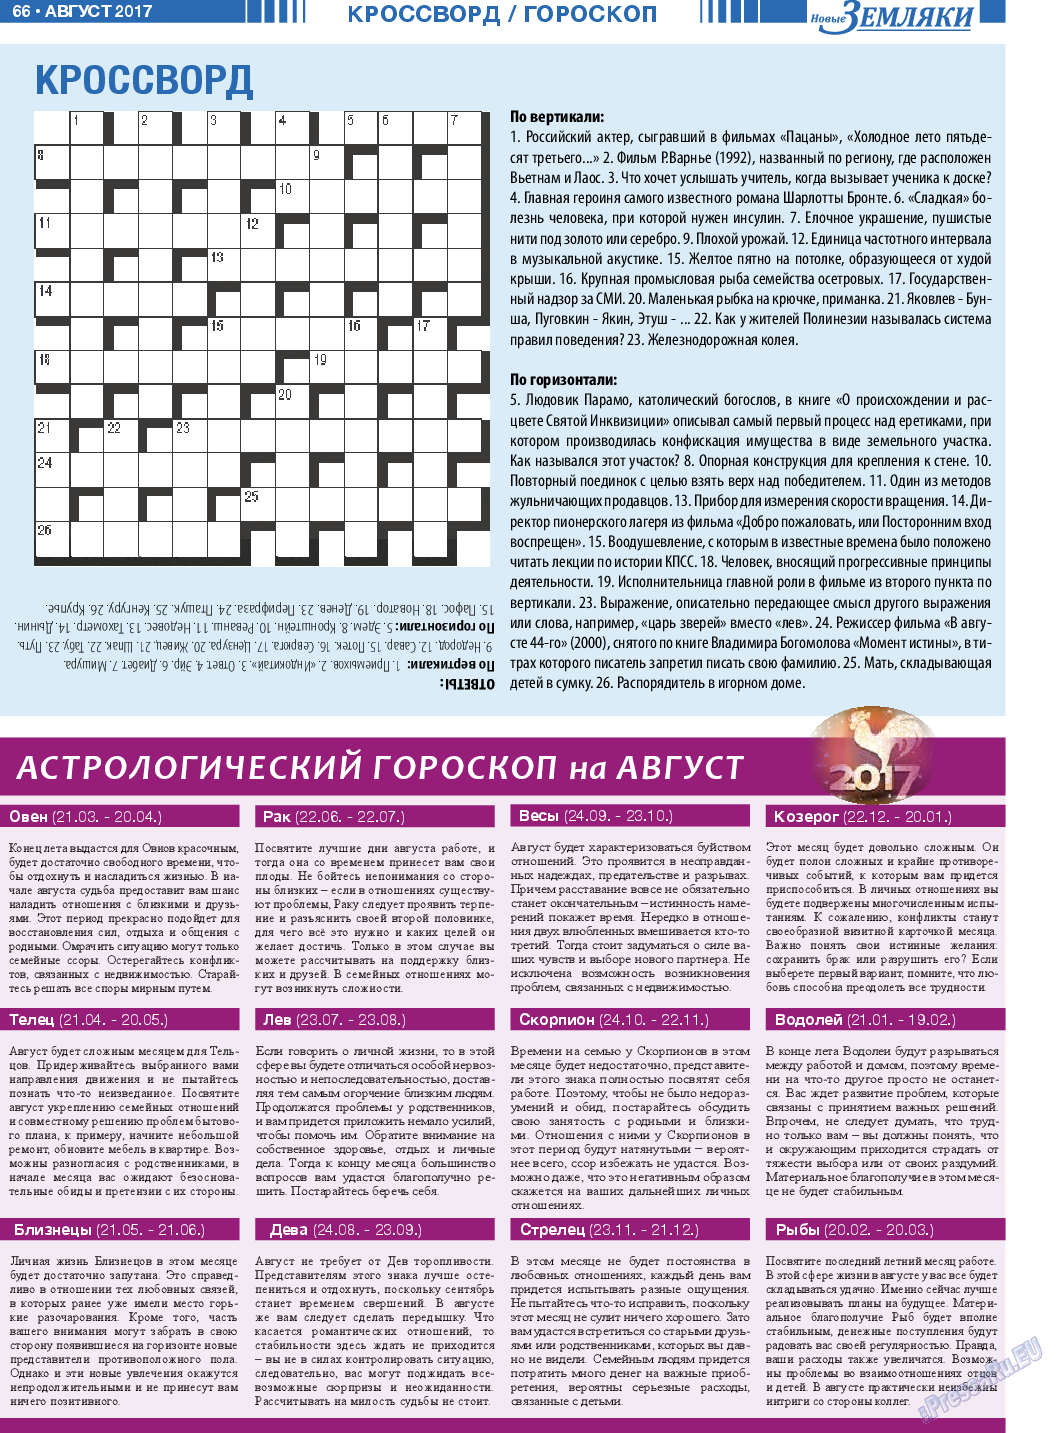 Новые Земляки (газета). 2017 год, номер 8, стр. 66